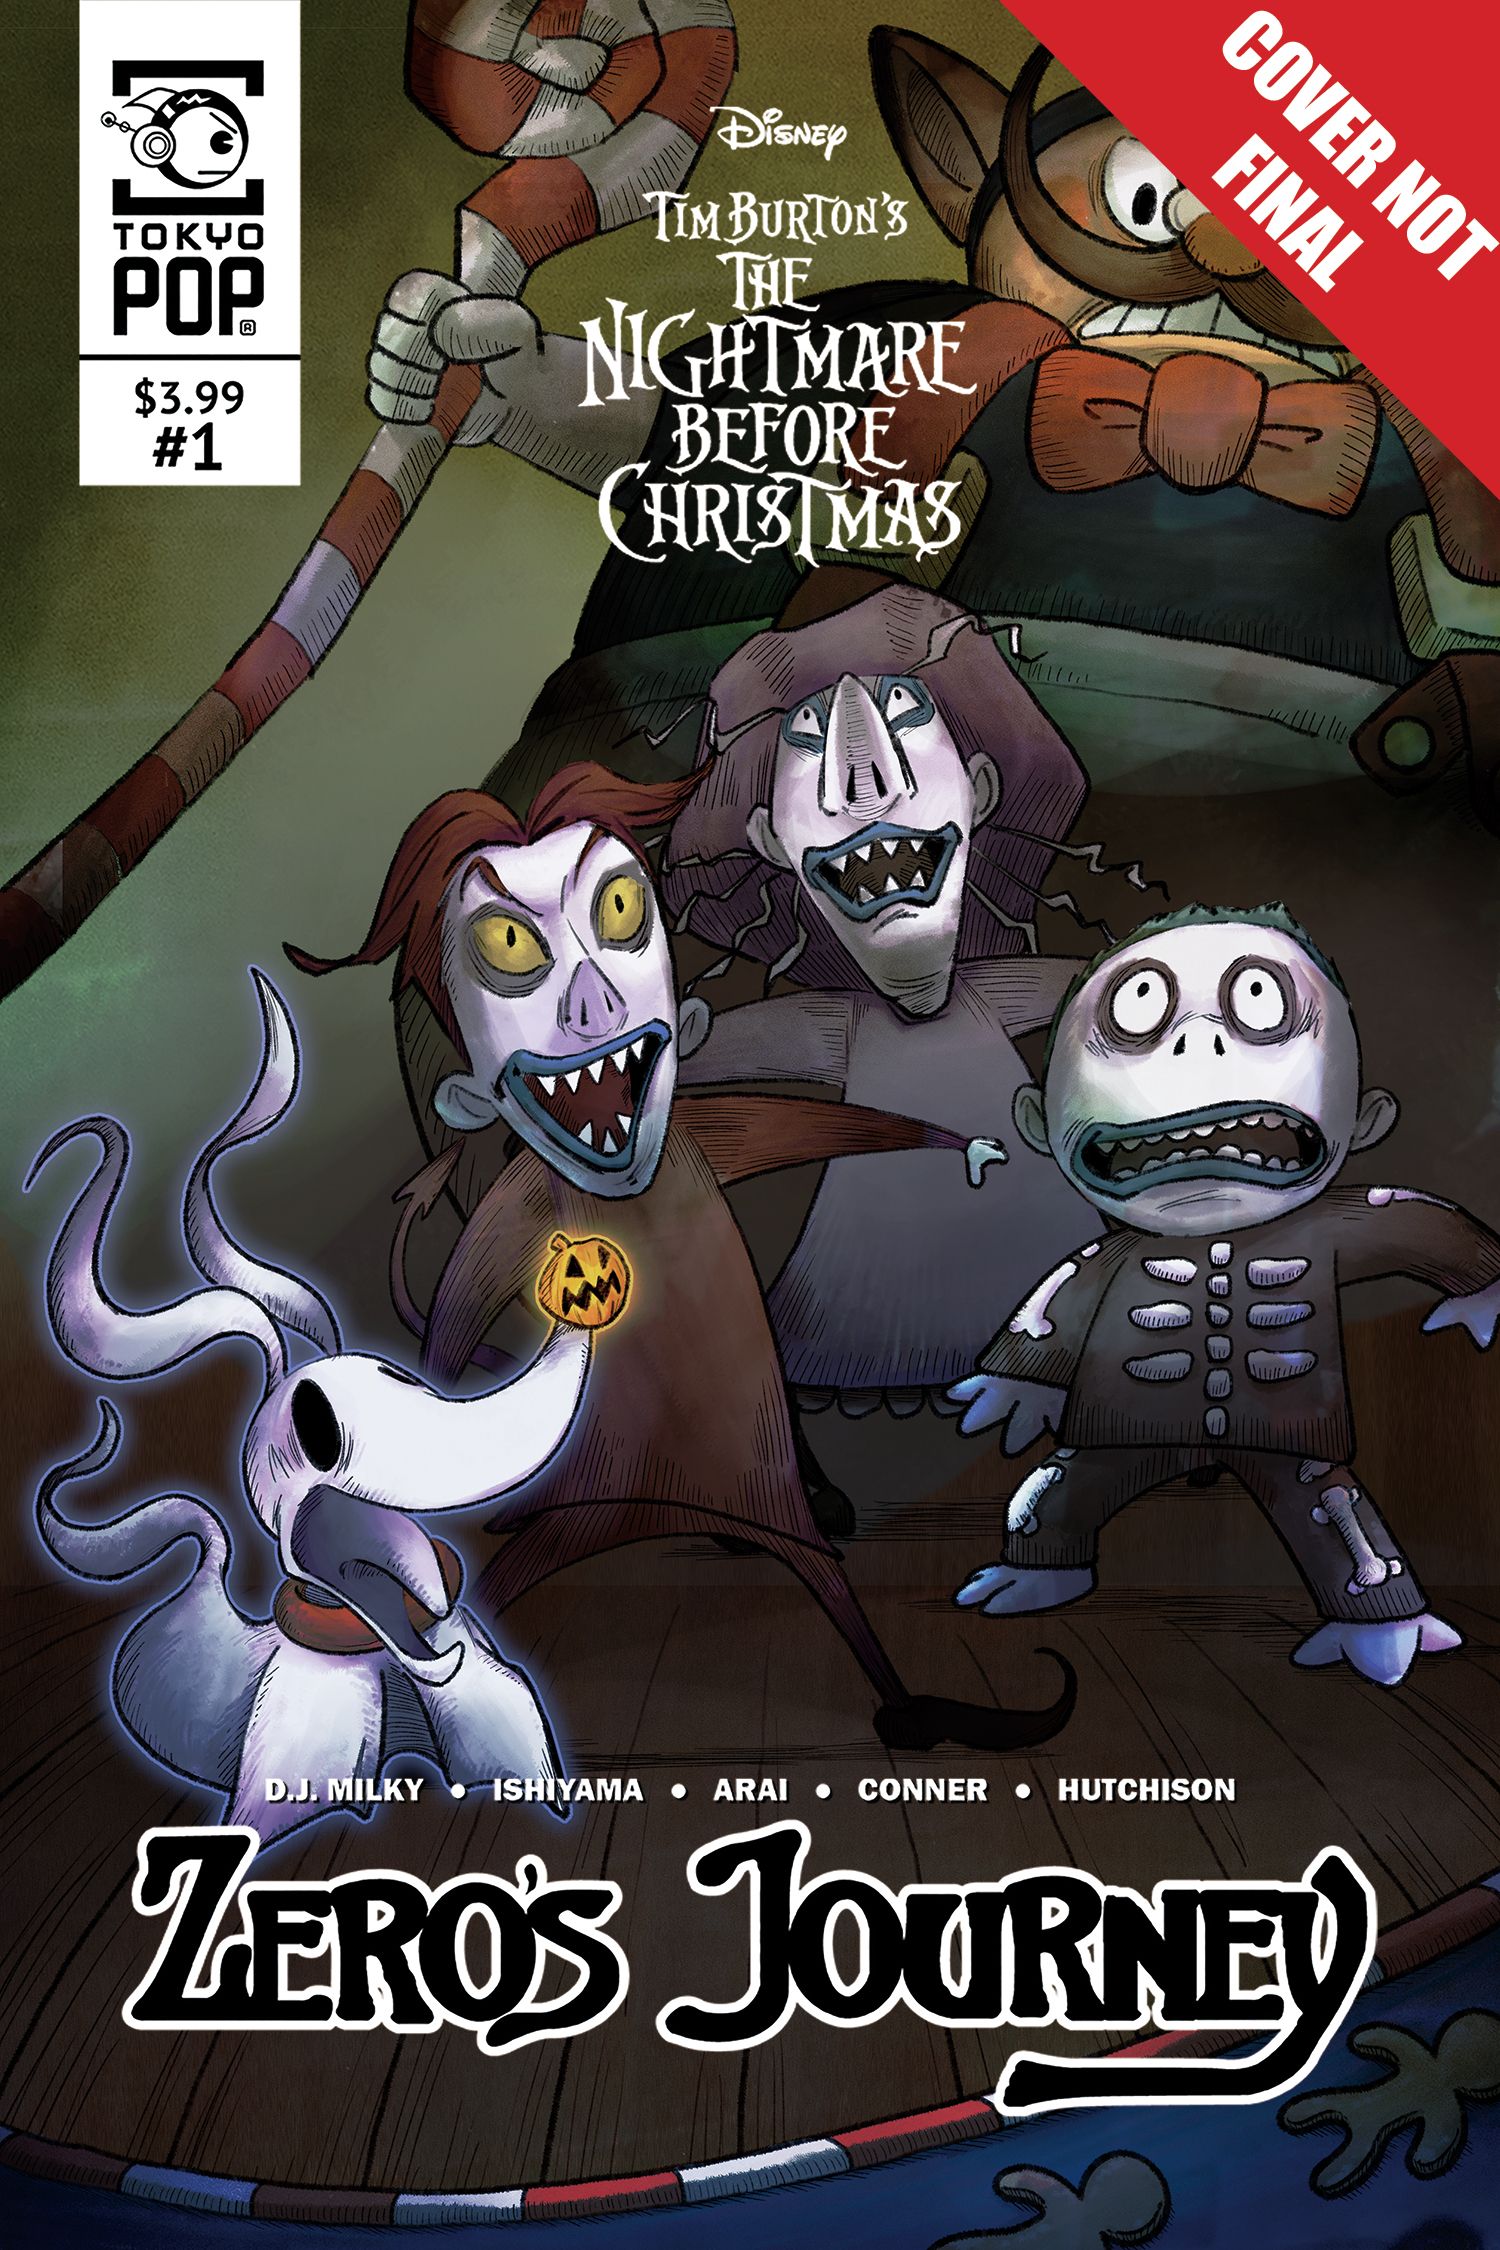 Tim Burton's Nightmare Before Christmas: Zero's Journey #11 Comic